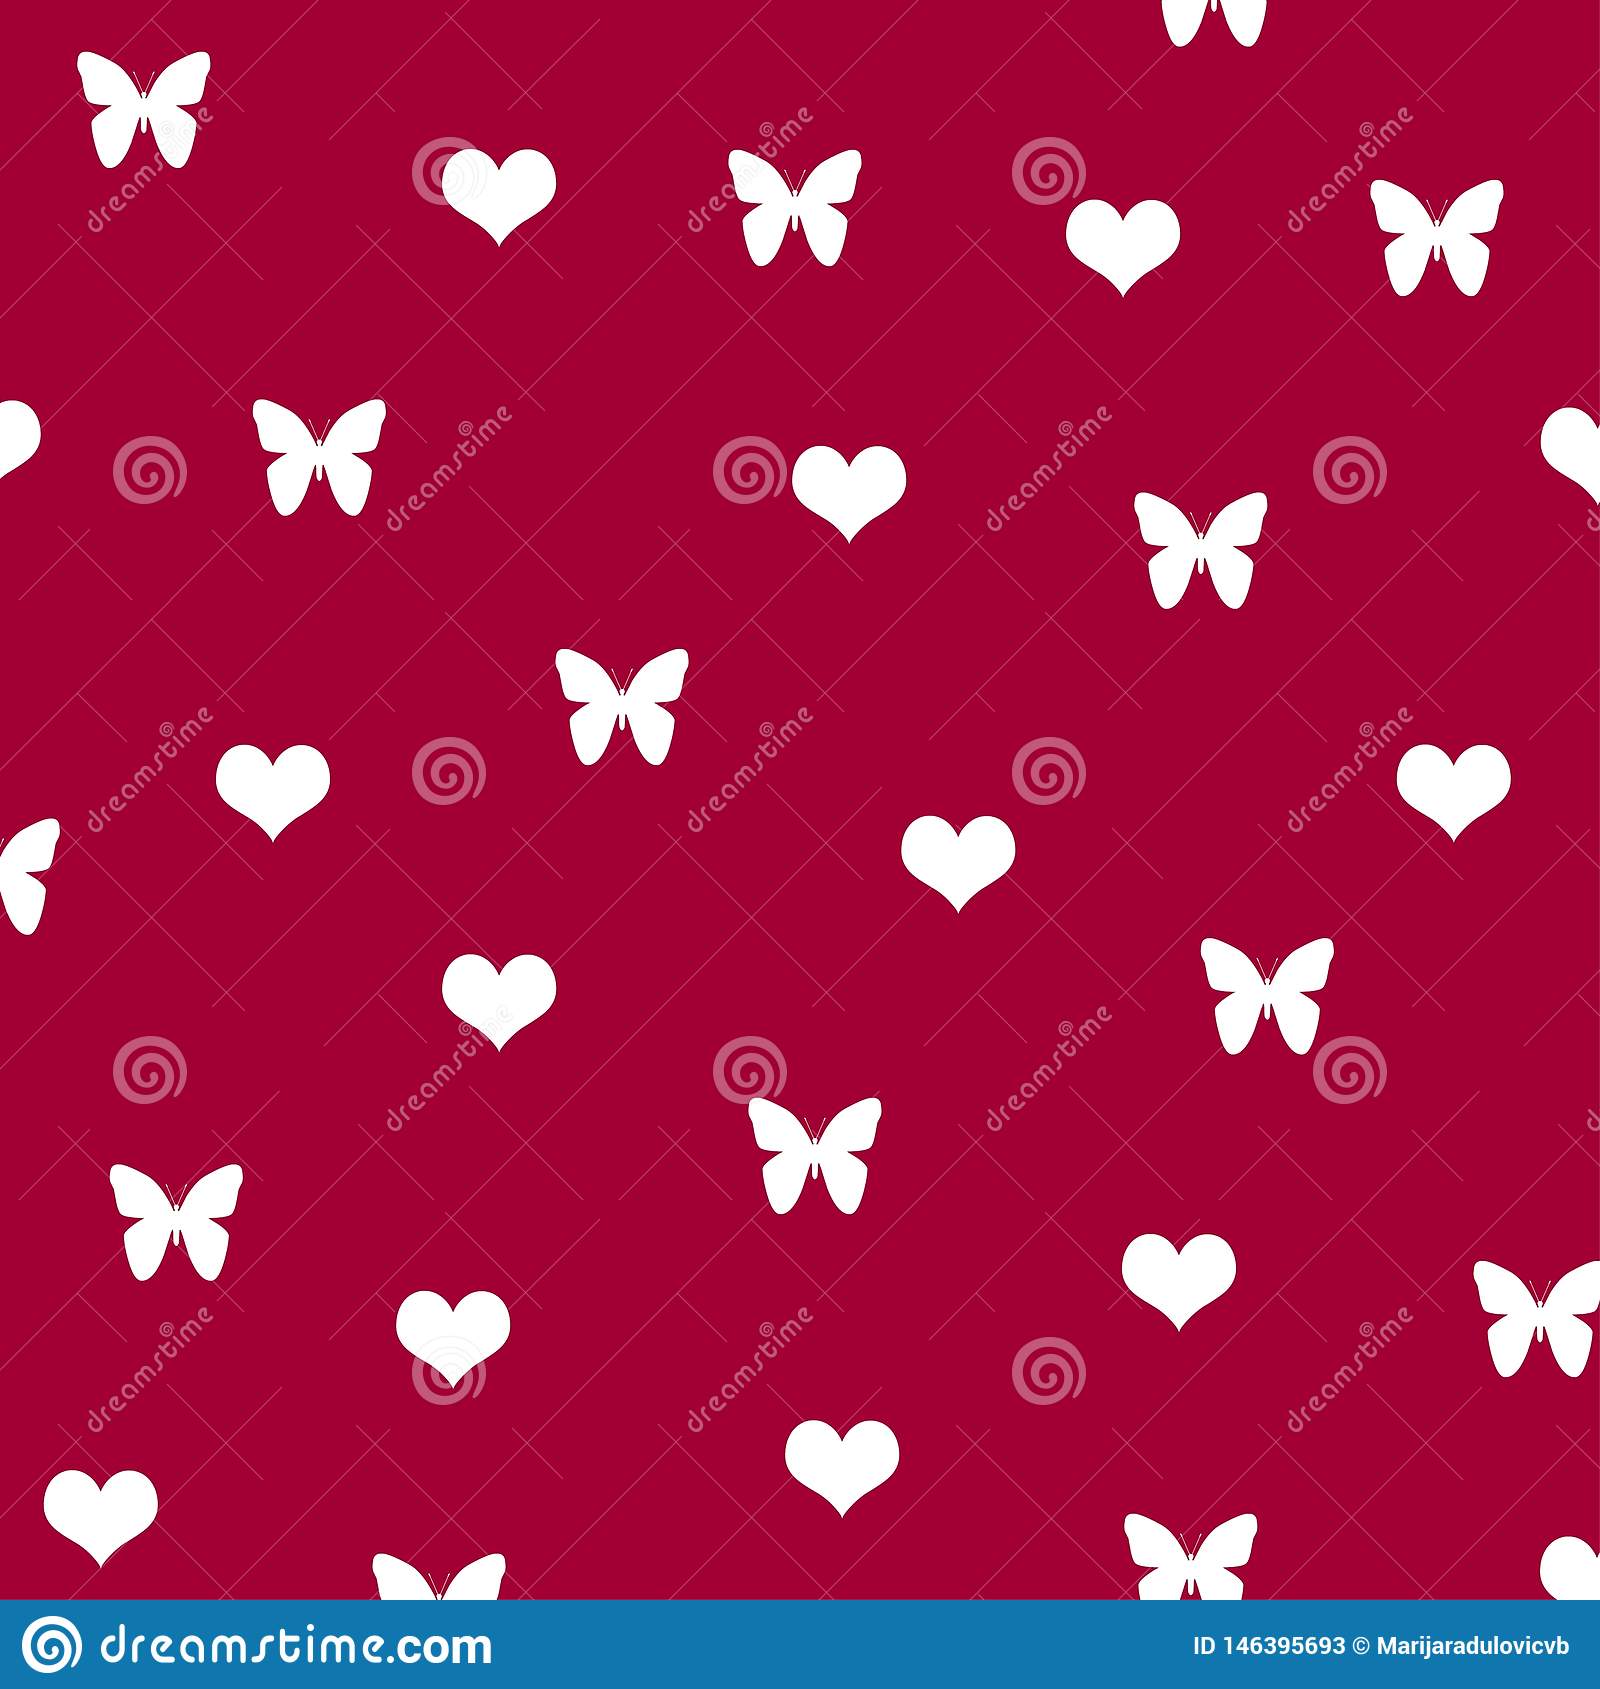 Background Pattern White Butterfly Heart Love Cute - Heart - HD Wallpaper 